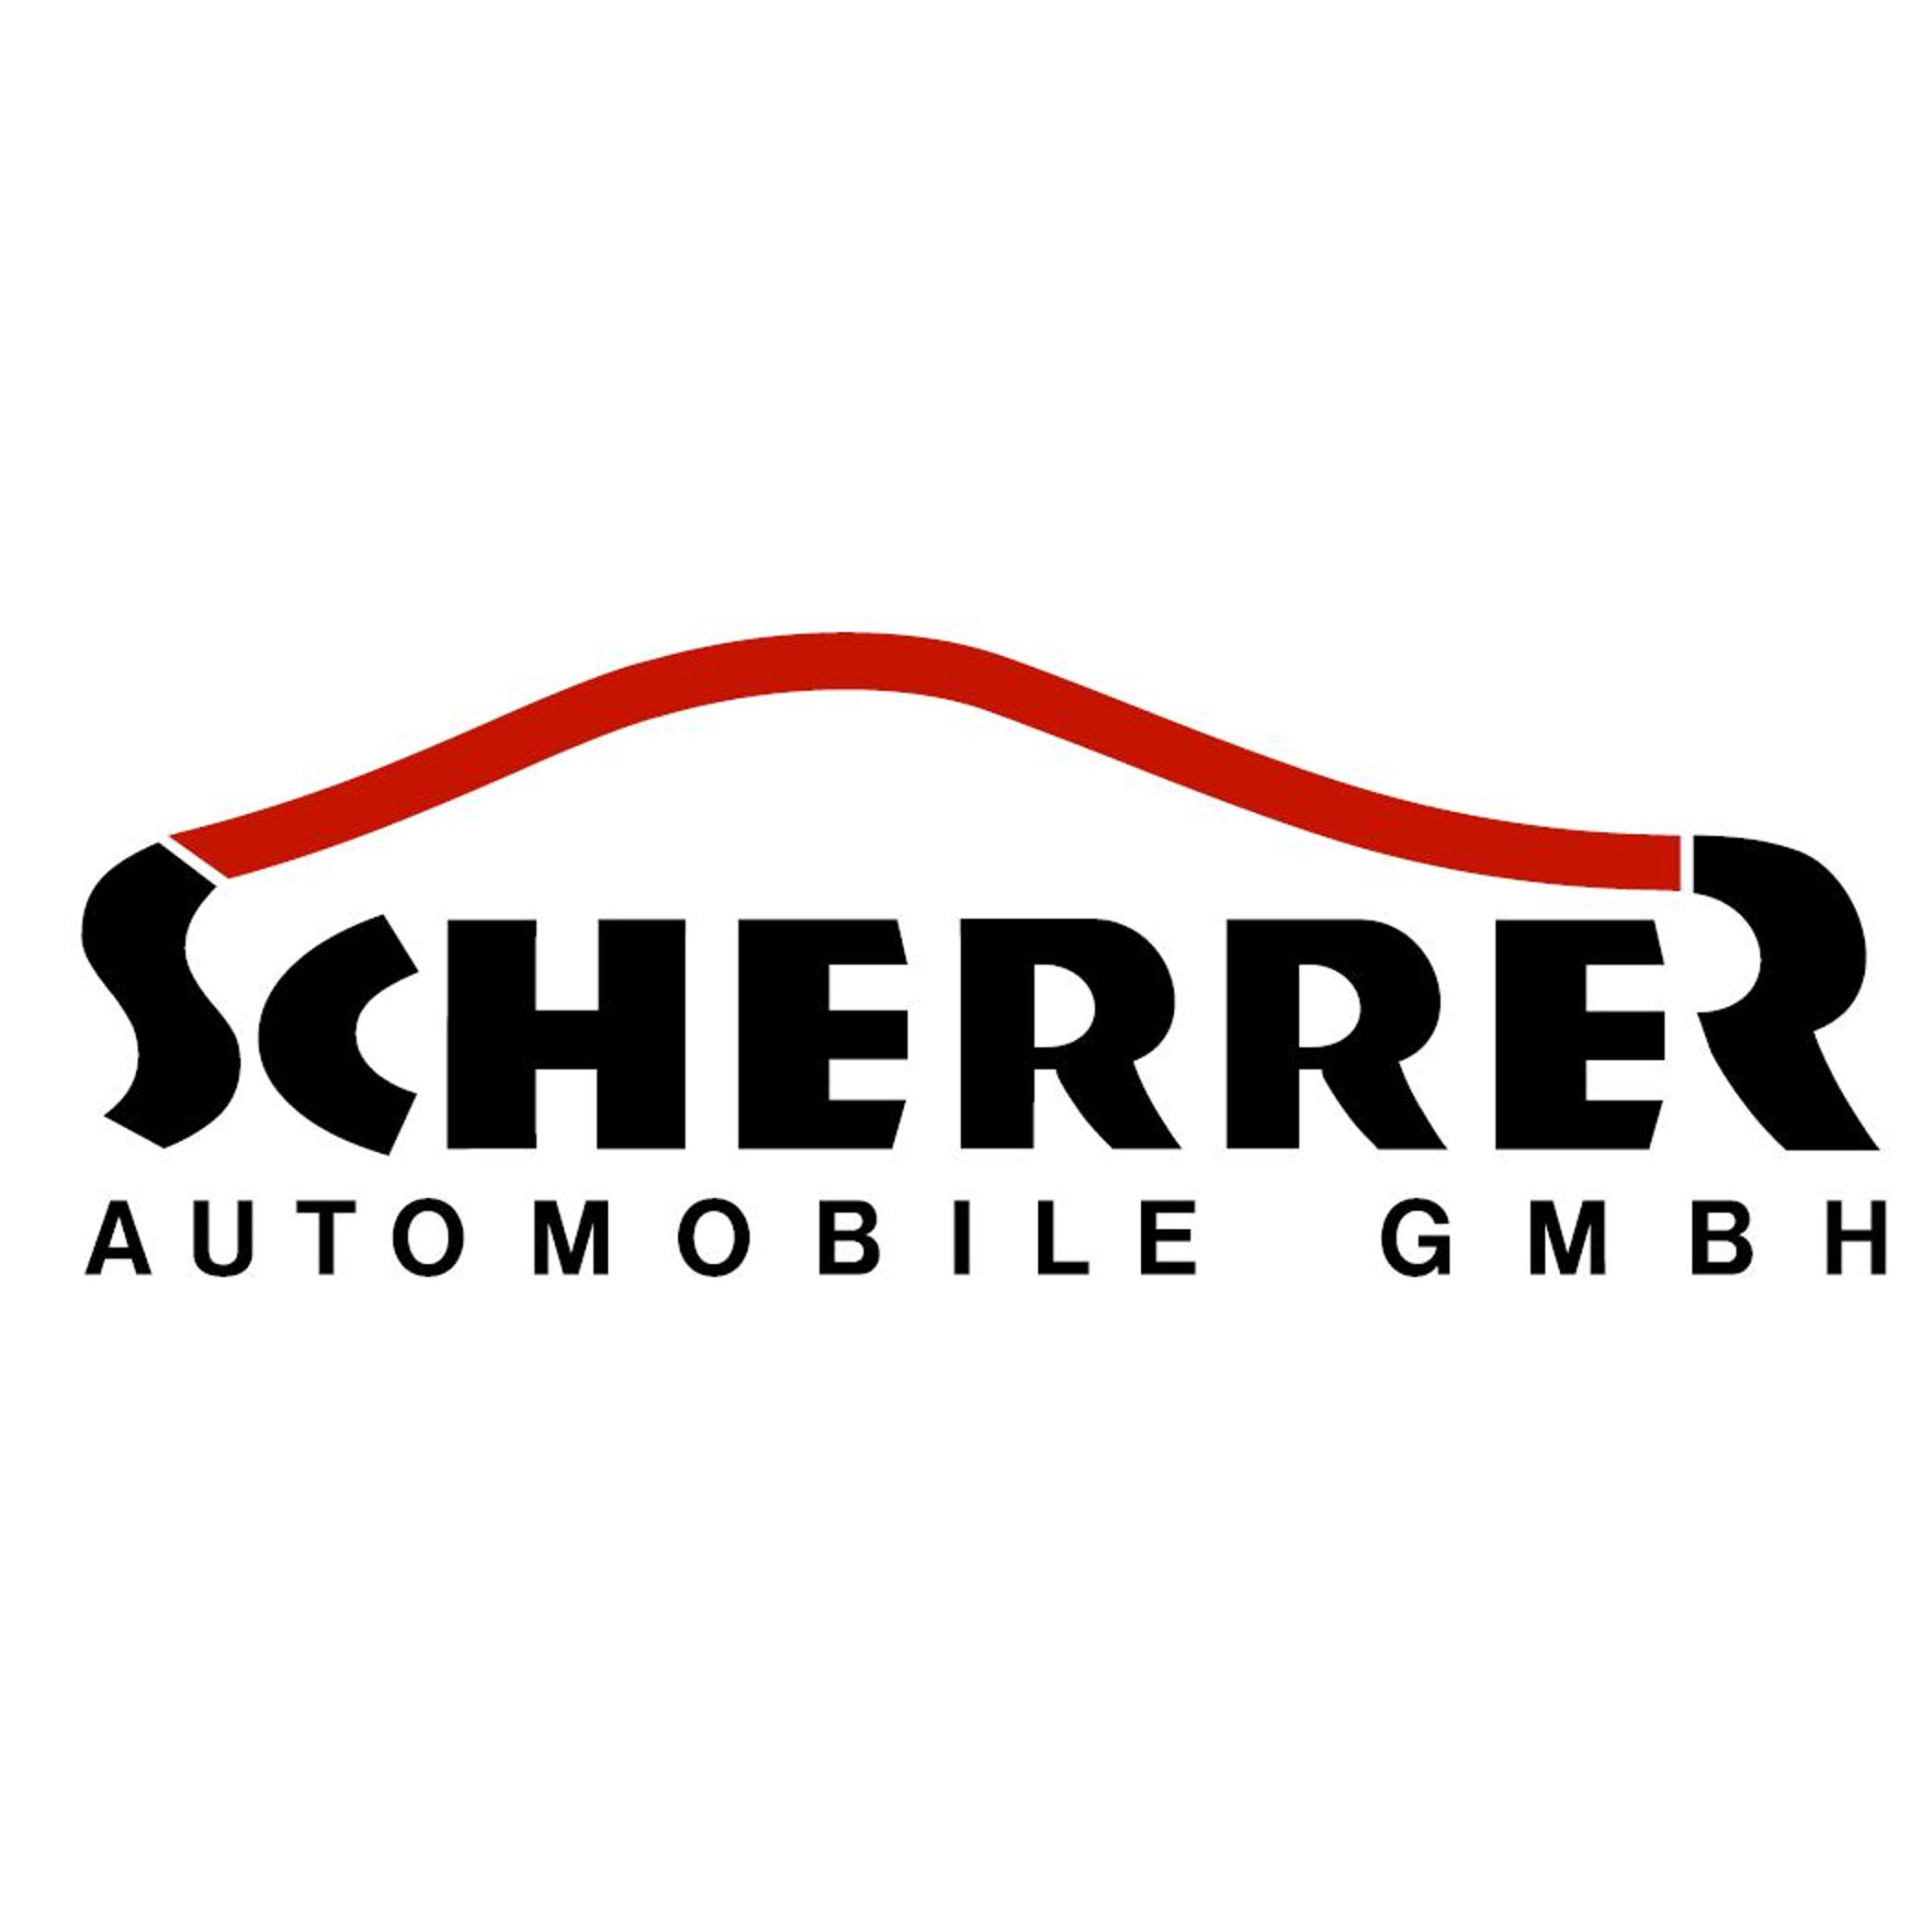 Scherrer Automobile GmbH Logo